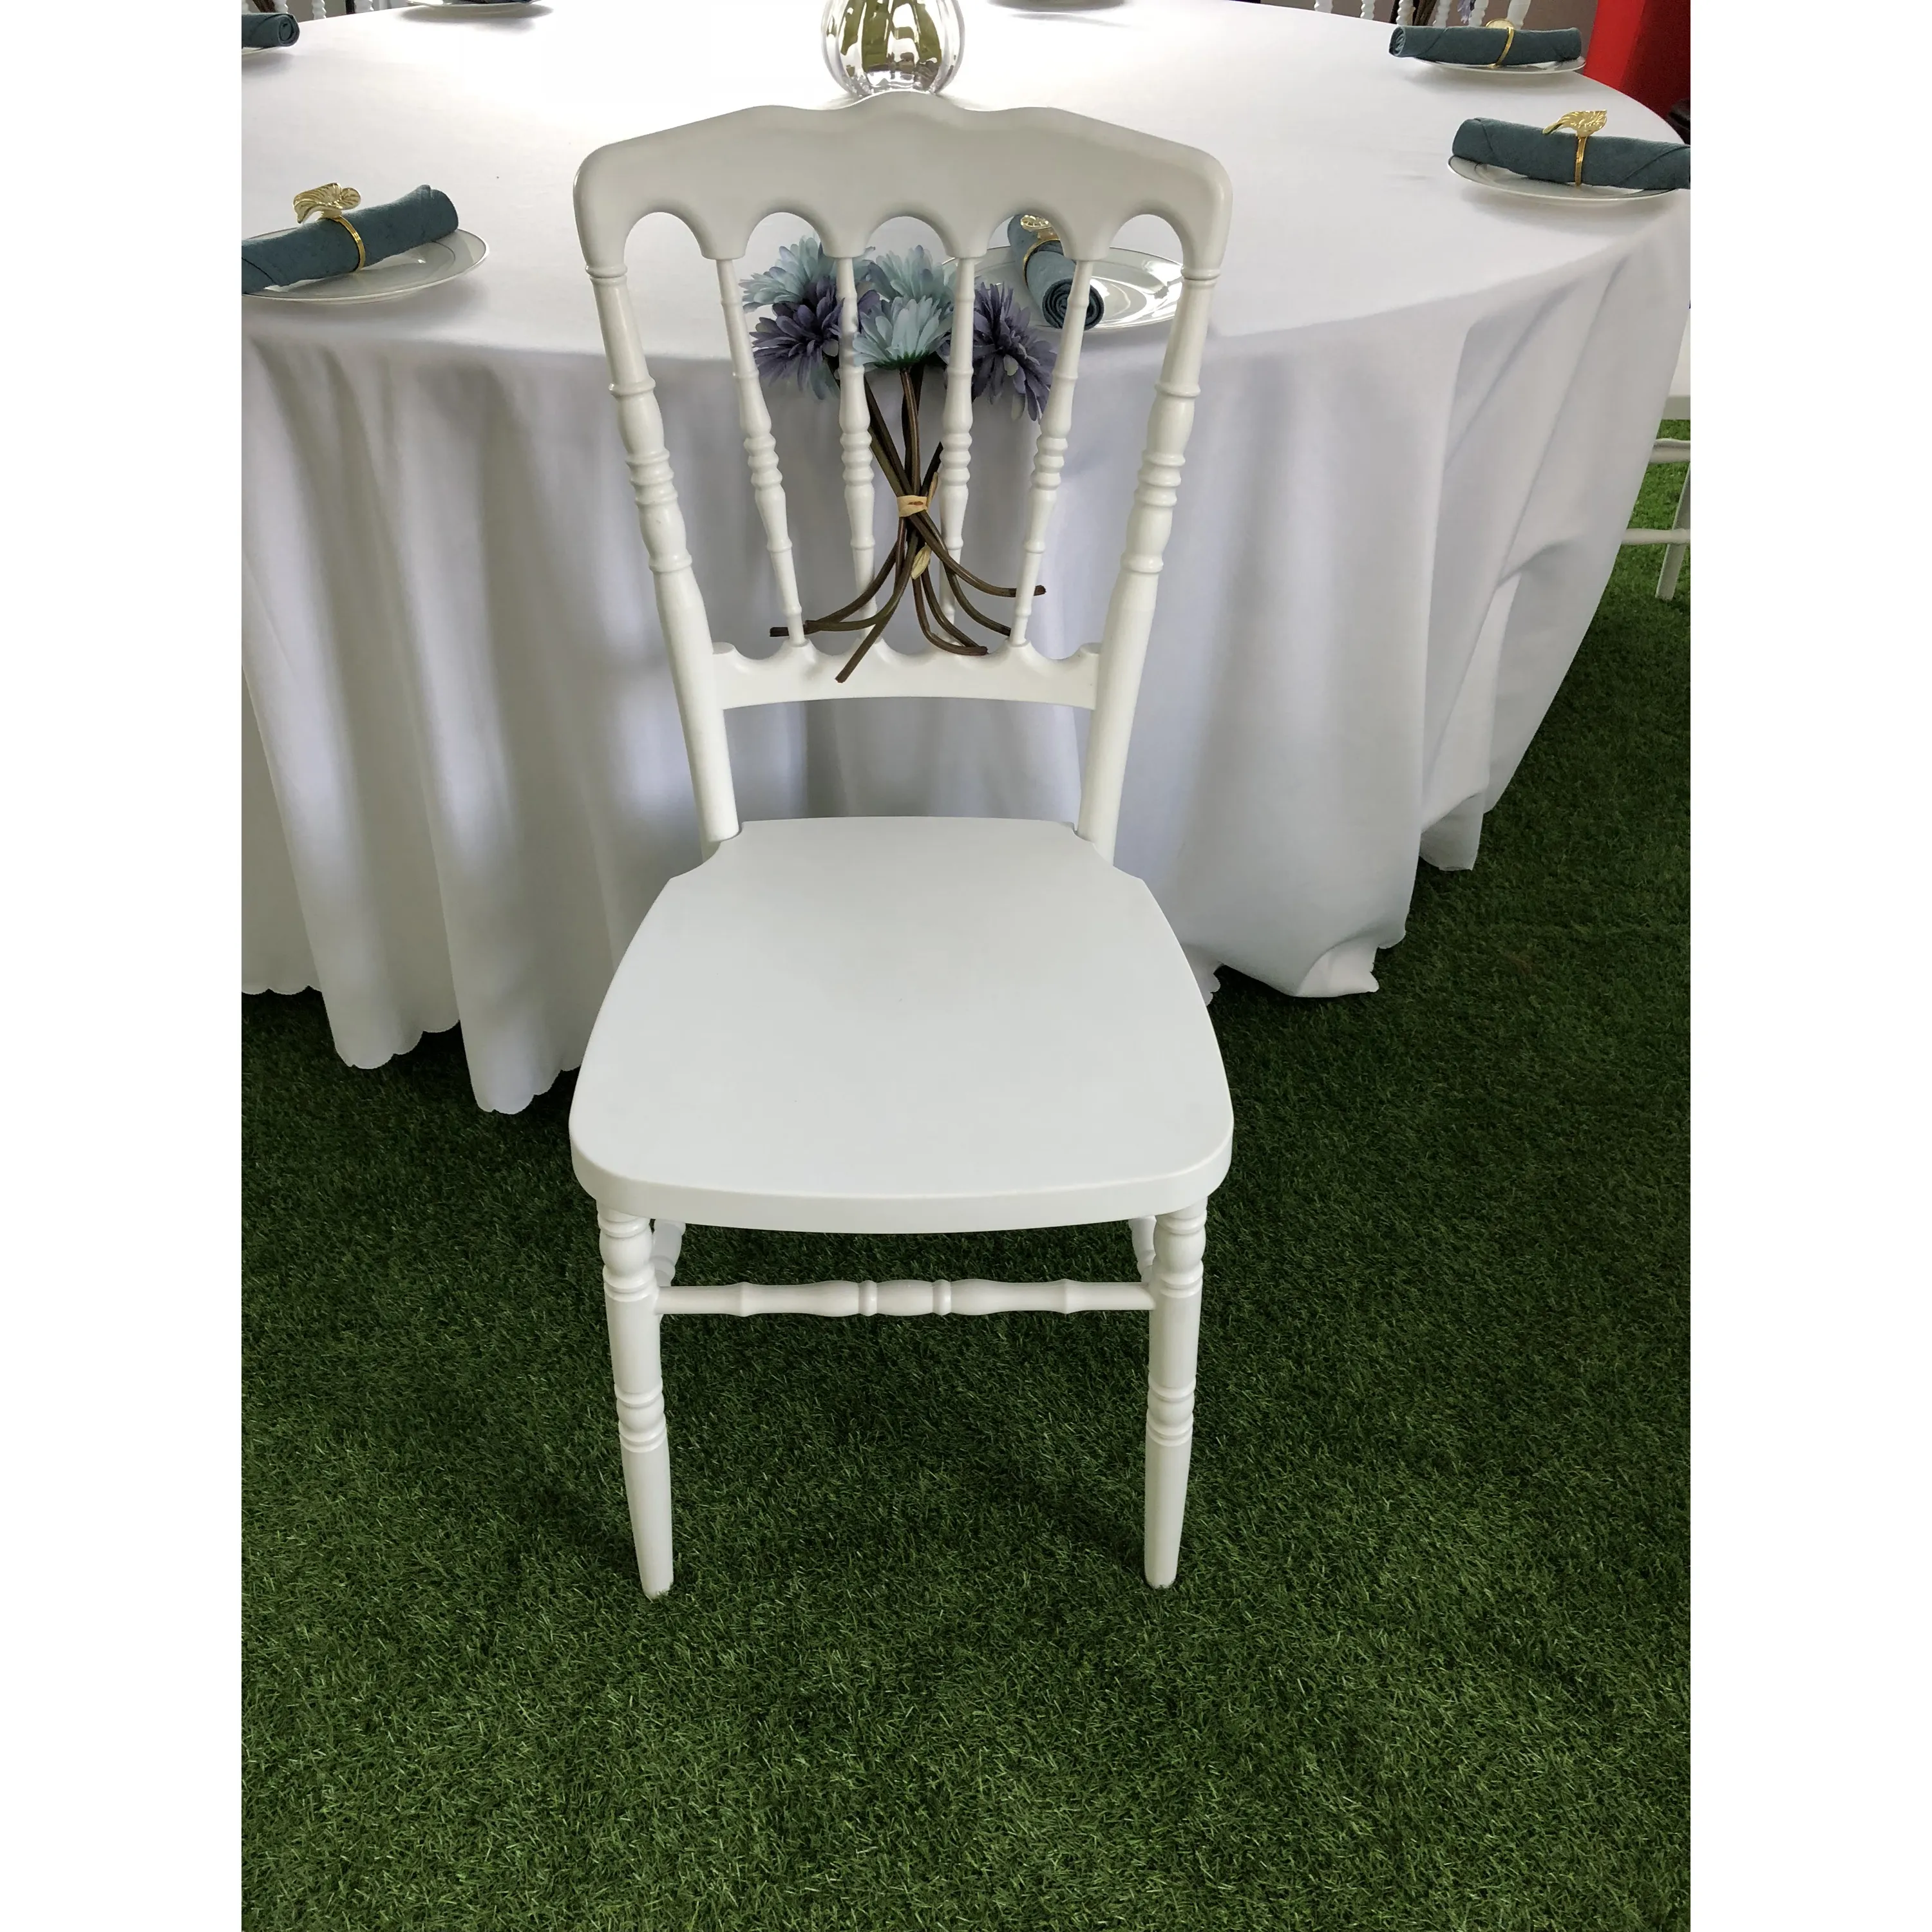 Hot Sale dubai white banquet tiffany chairs